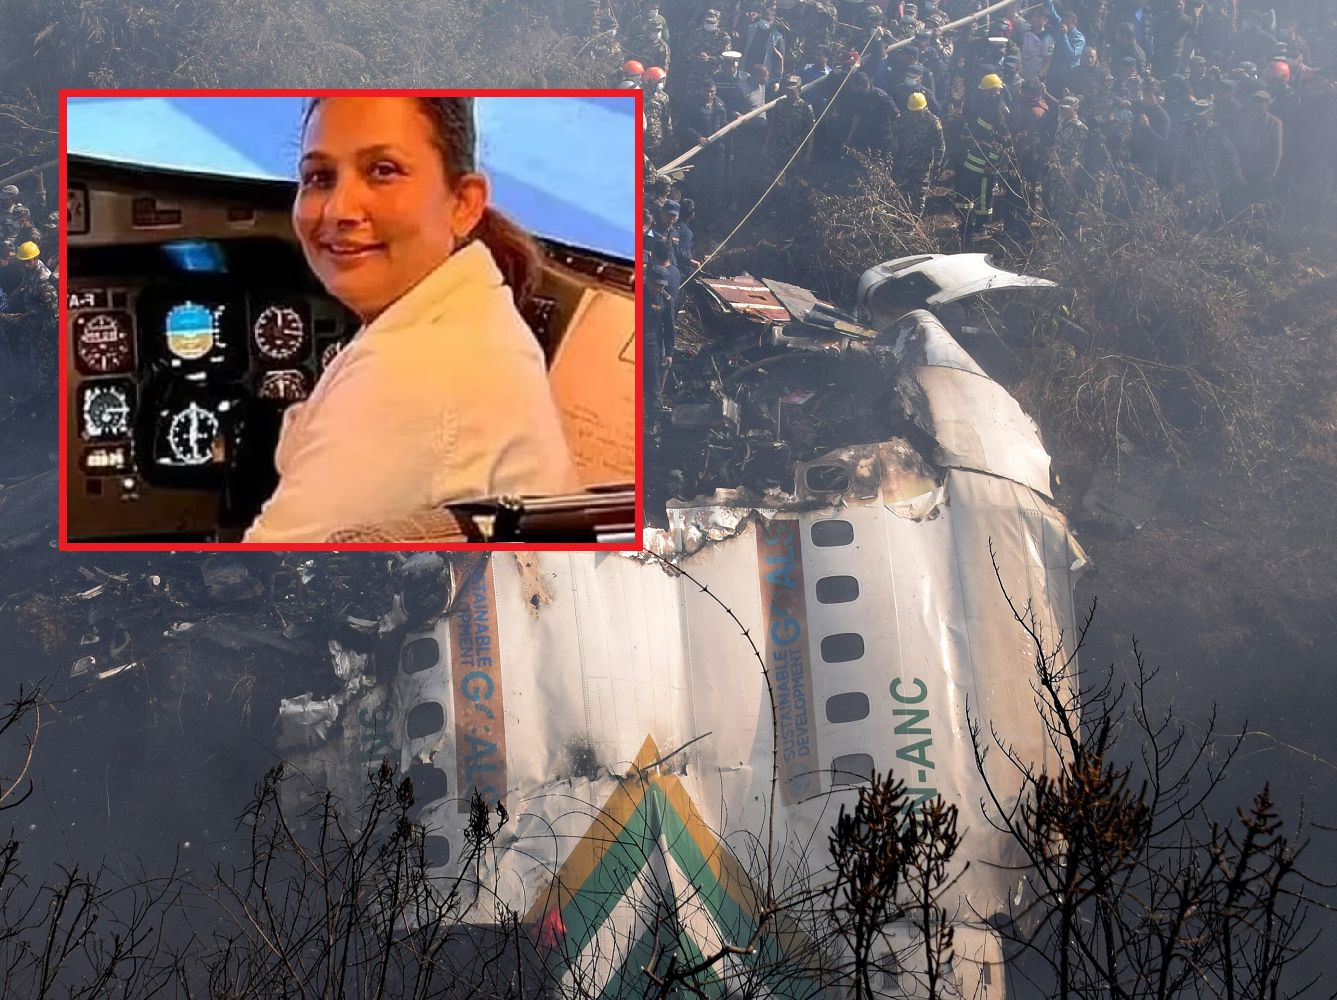 Pilotka zginęła w katastrofie w Nepalu. Podobnie jak jej mąż 17 lat wcześniej